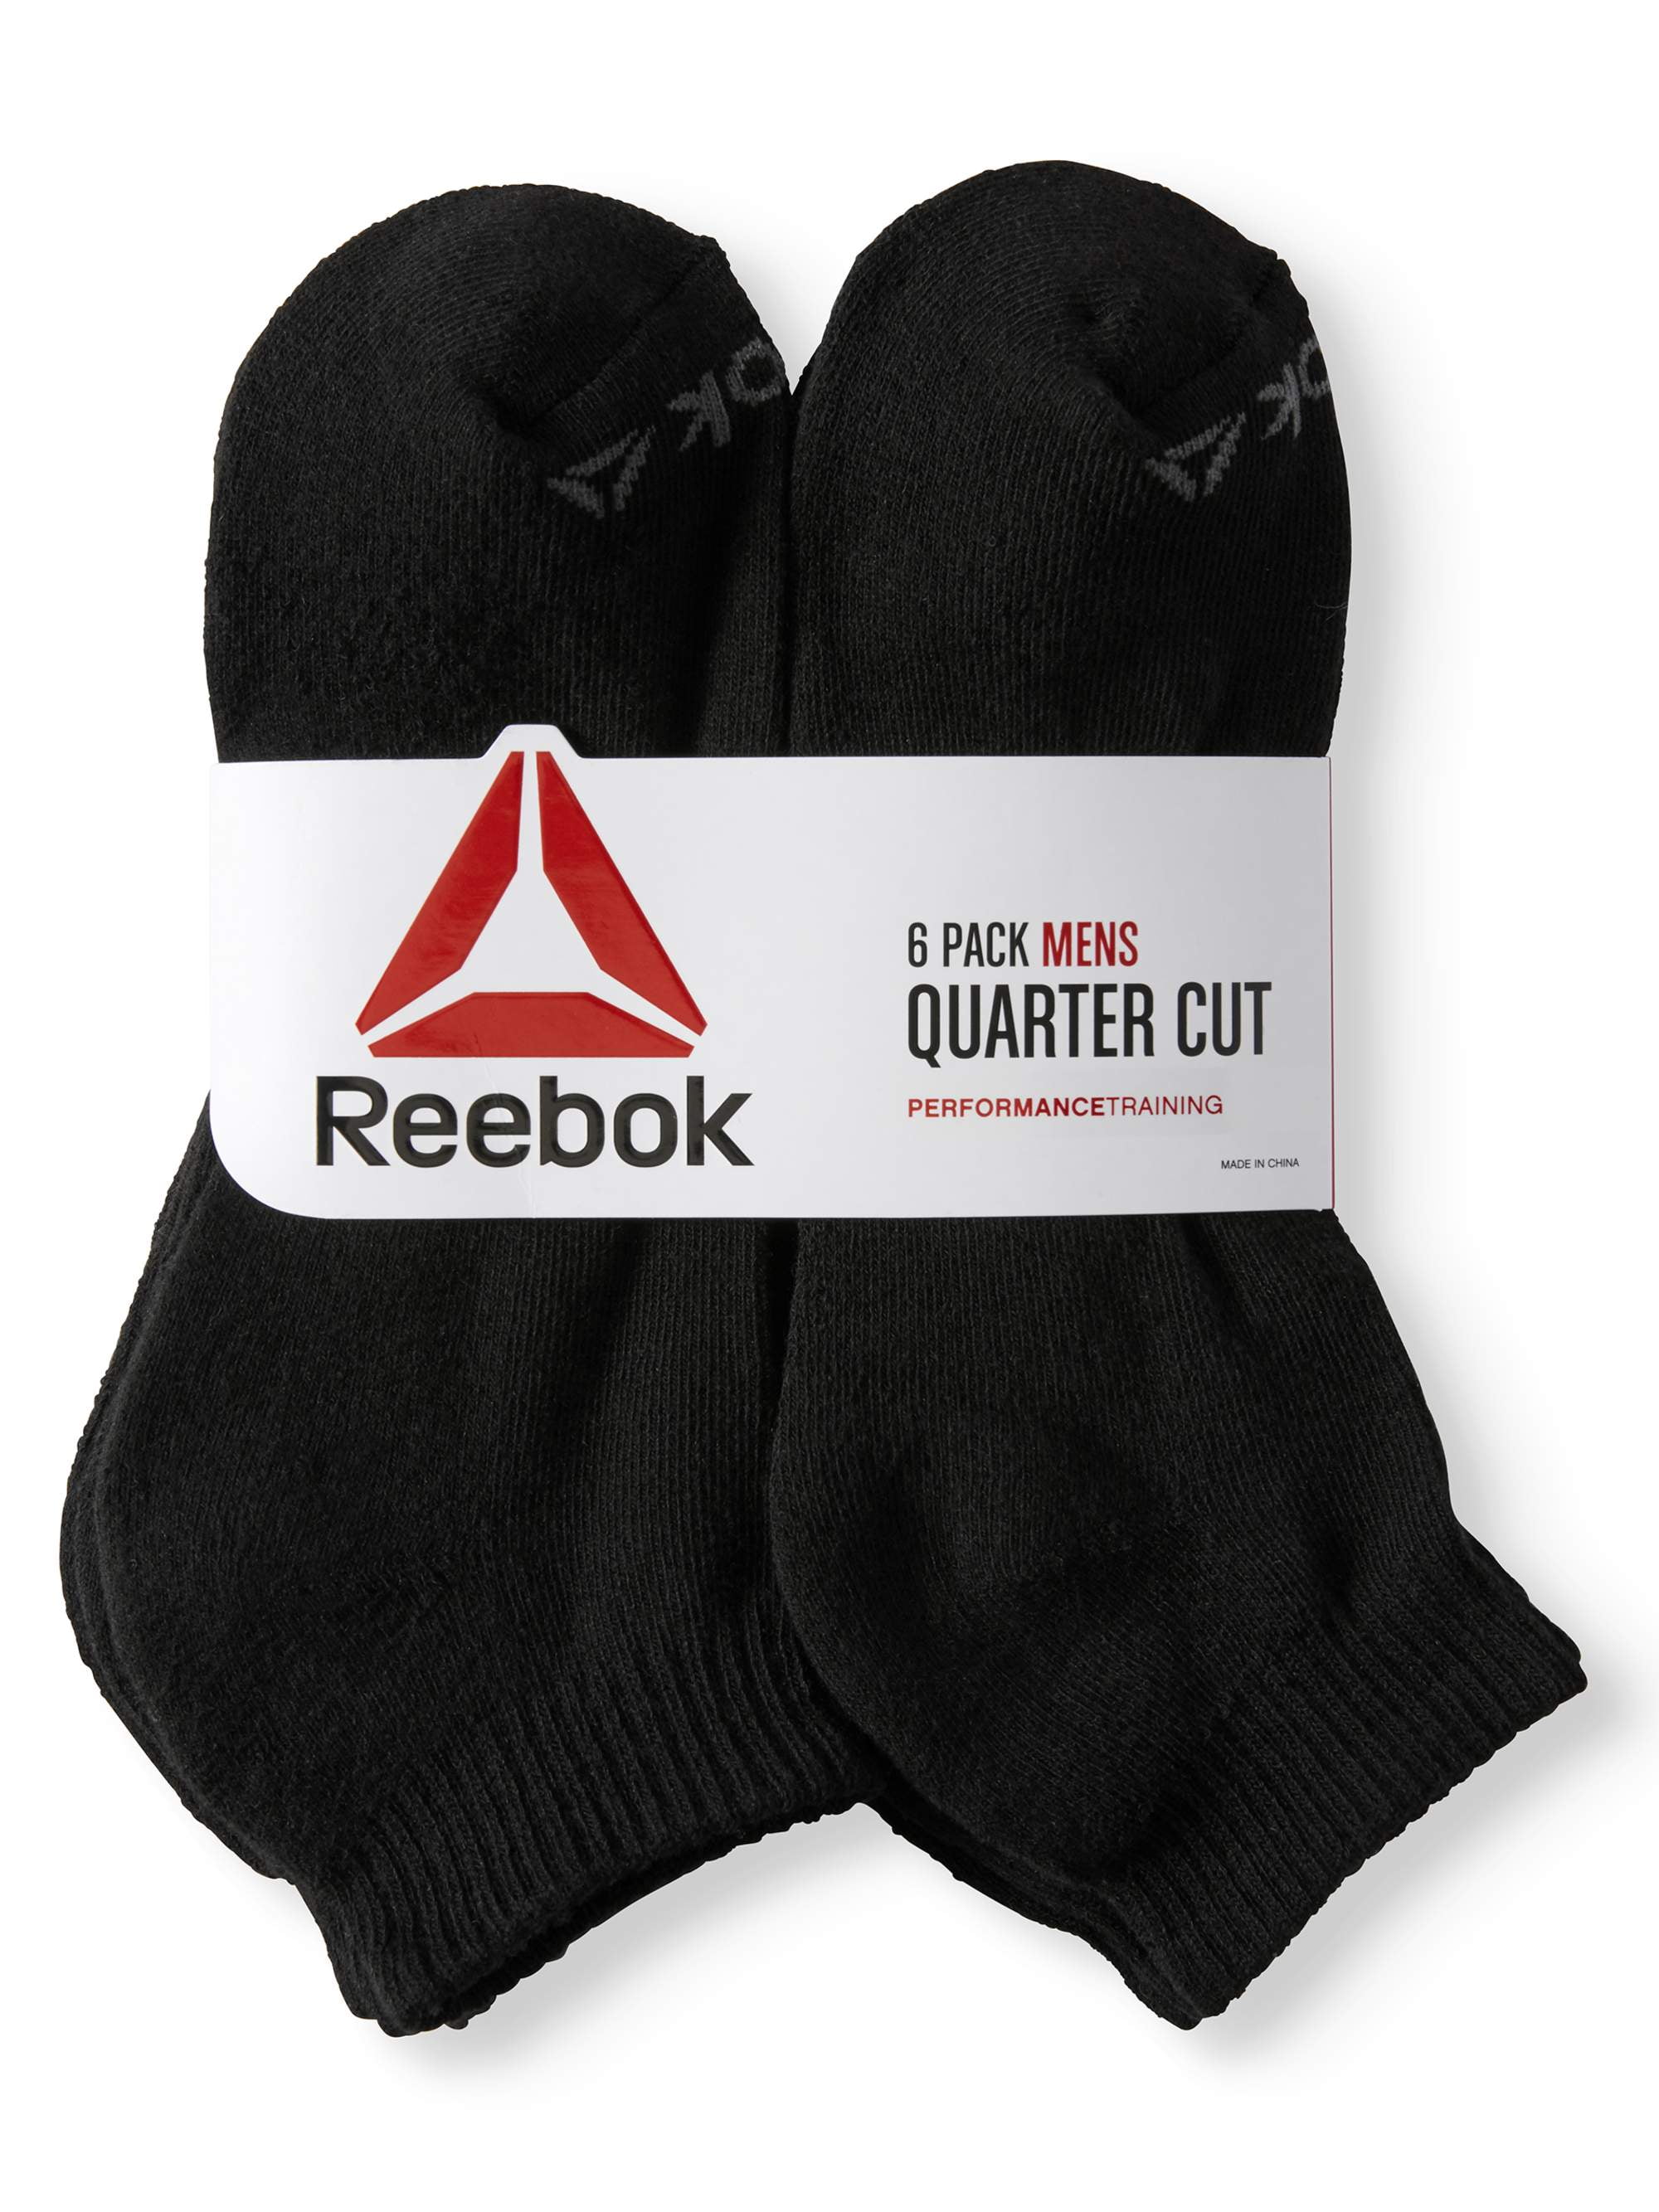 reebok quarter cut socks